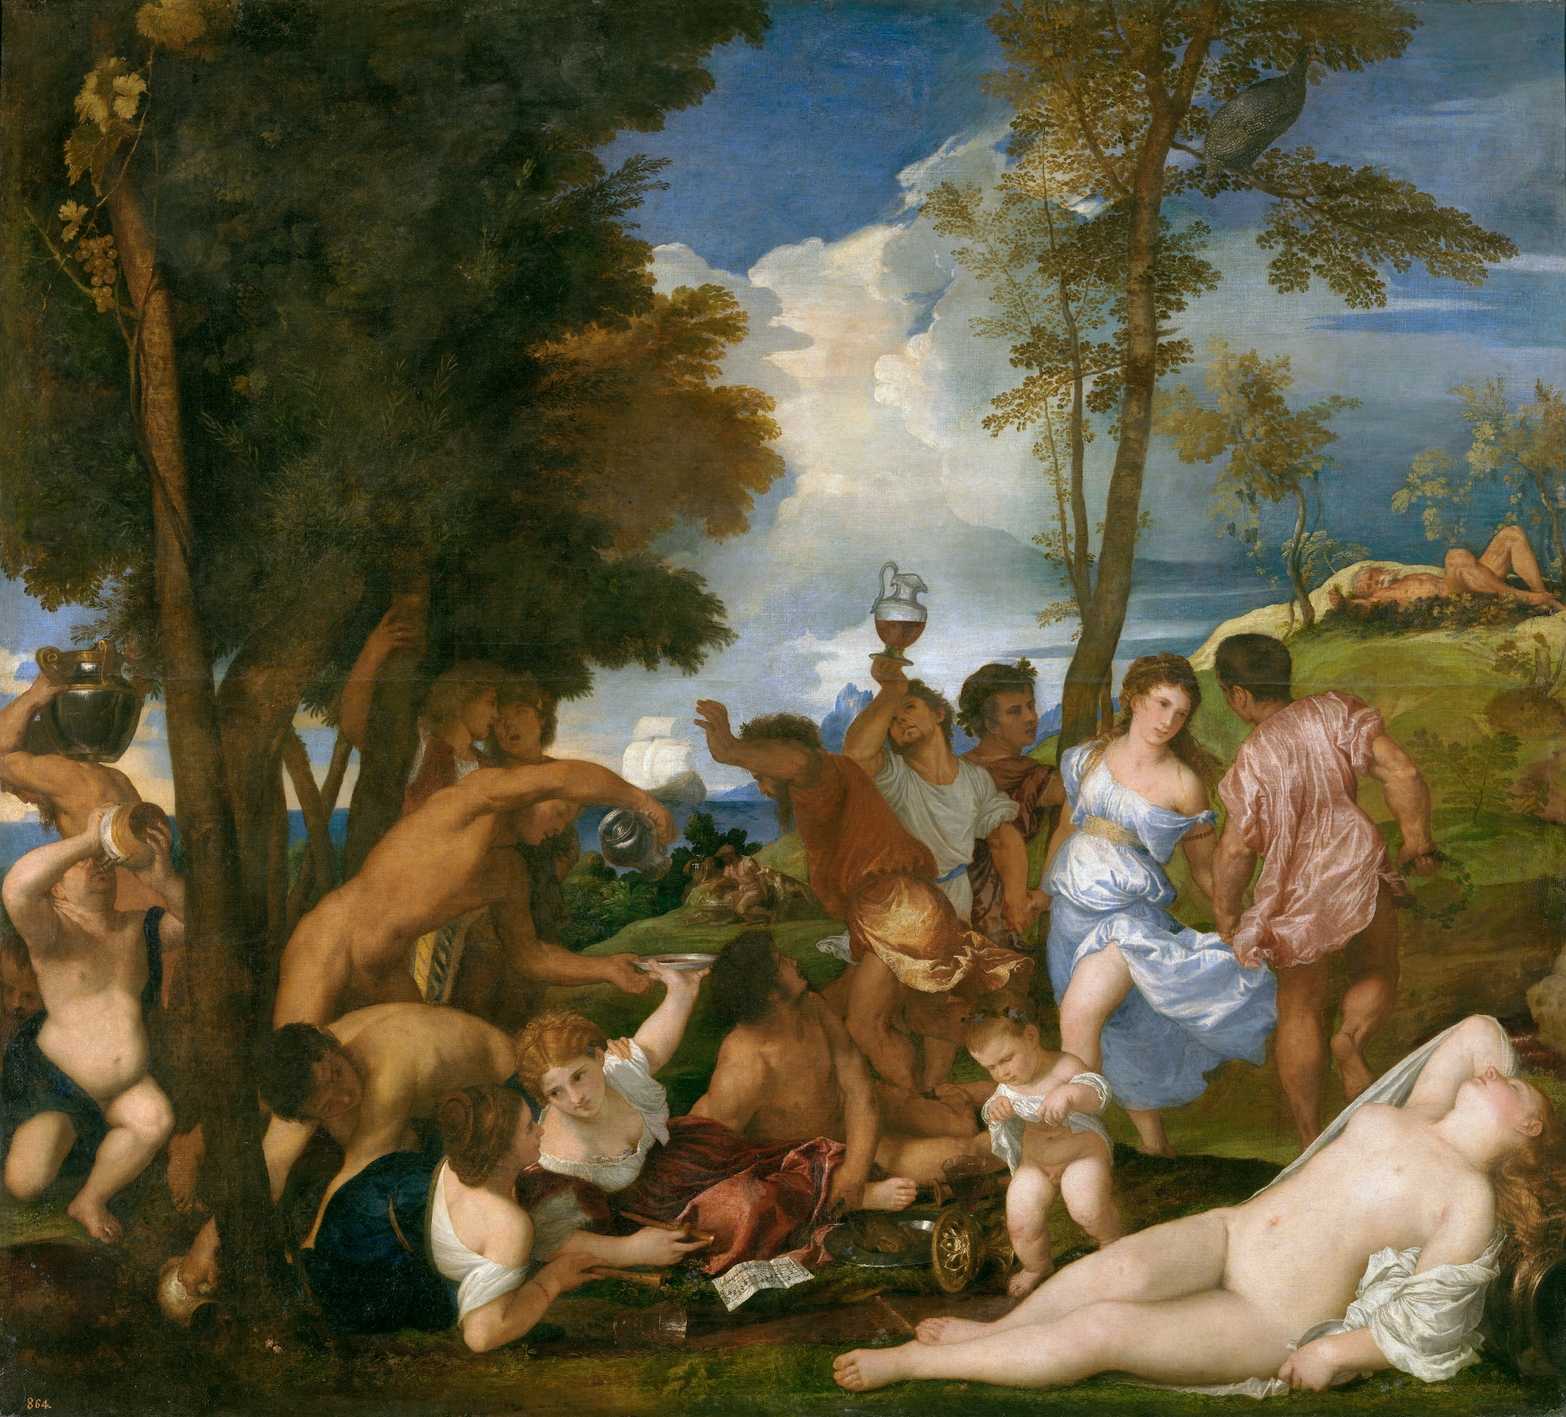 Andrianların Bacchanal'ı'ı ya da Andrialılar, Titian tarafından yapılmış bir yağlı boya tablodur.